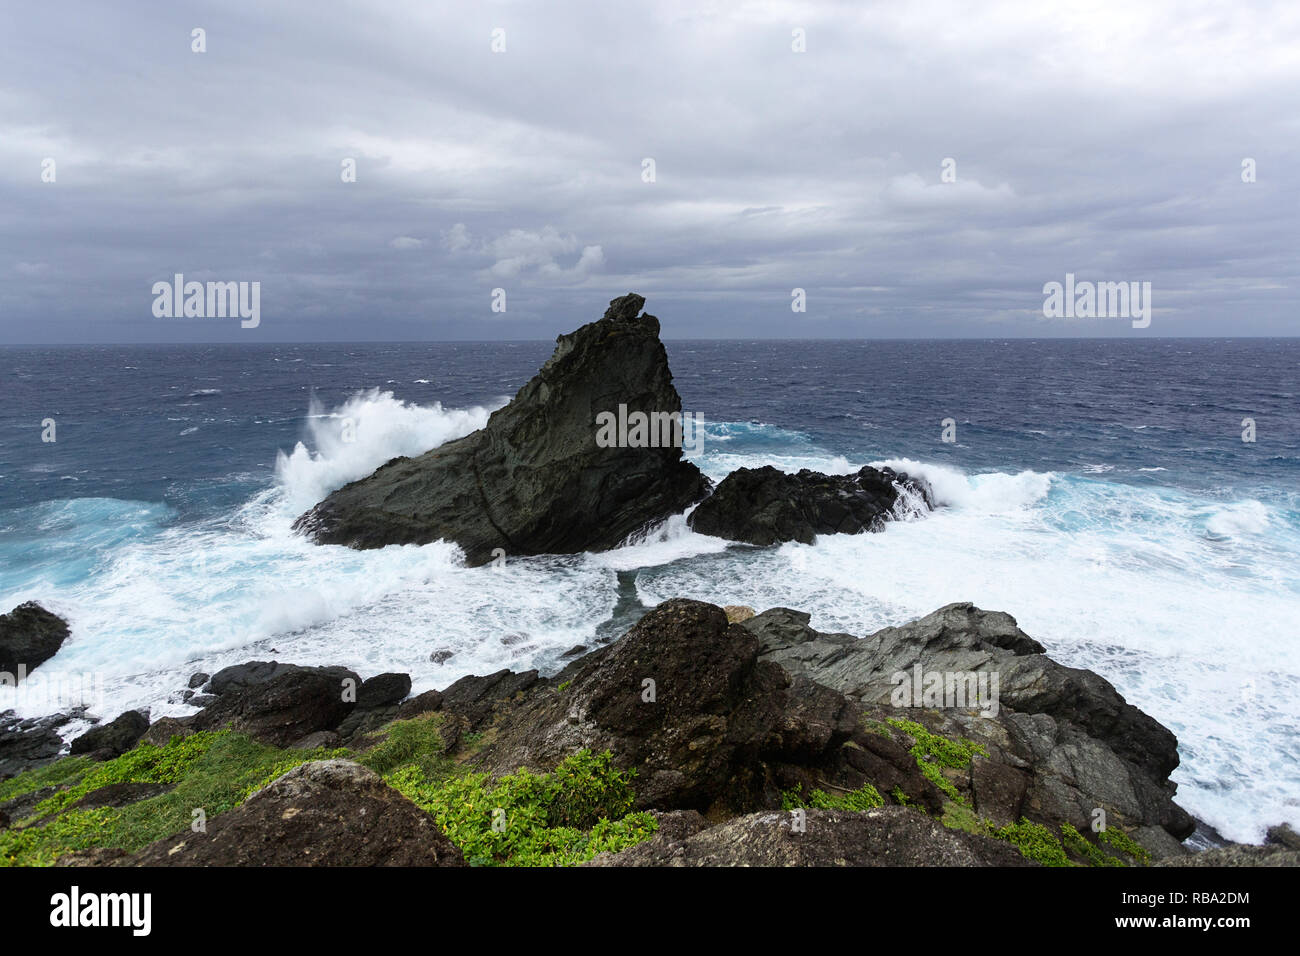 L'état de la mer sur la côte sauvage à Uganzaki dans le phare de l'Île Ishigaki, Japon Okinawa Banque D'Images